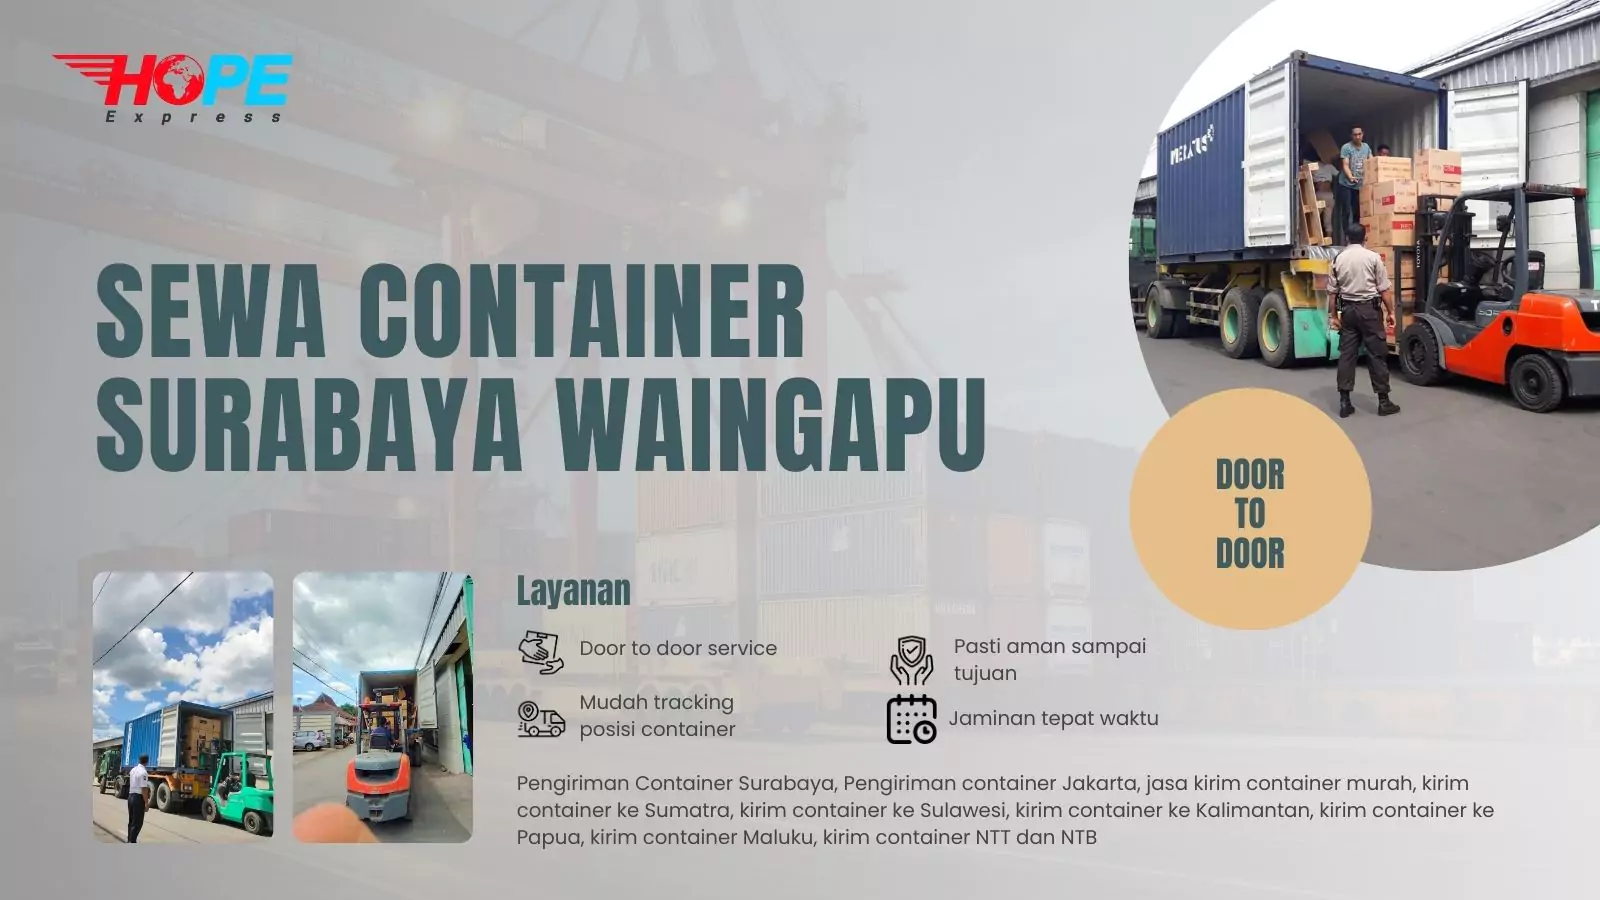 Sewa Container Surabaya Waingapu